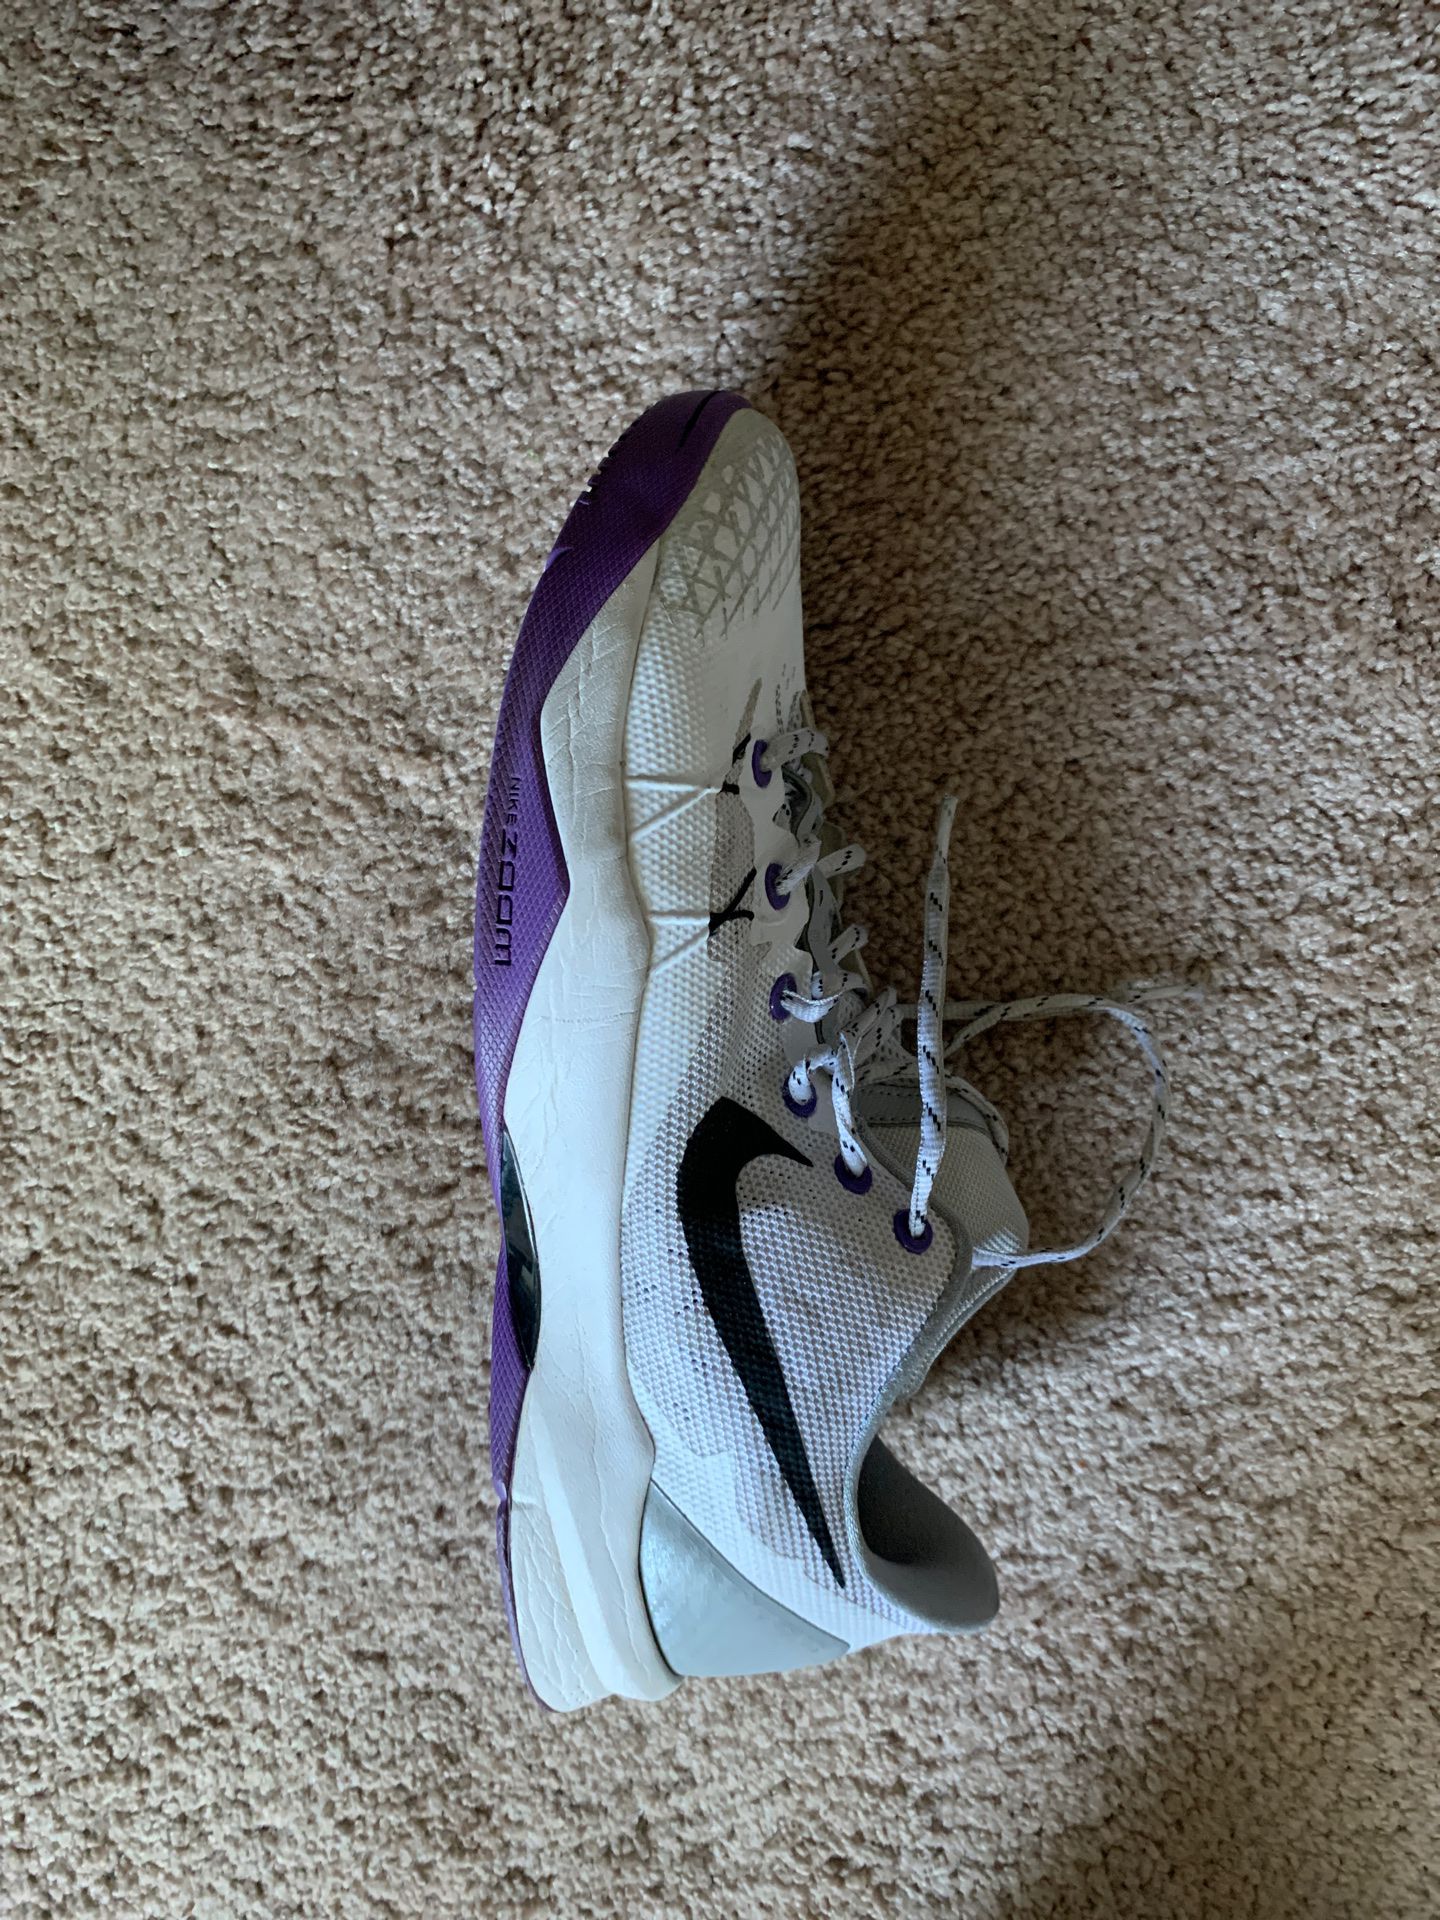 Kobe shoes size 11.5